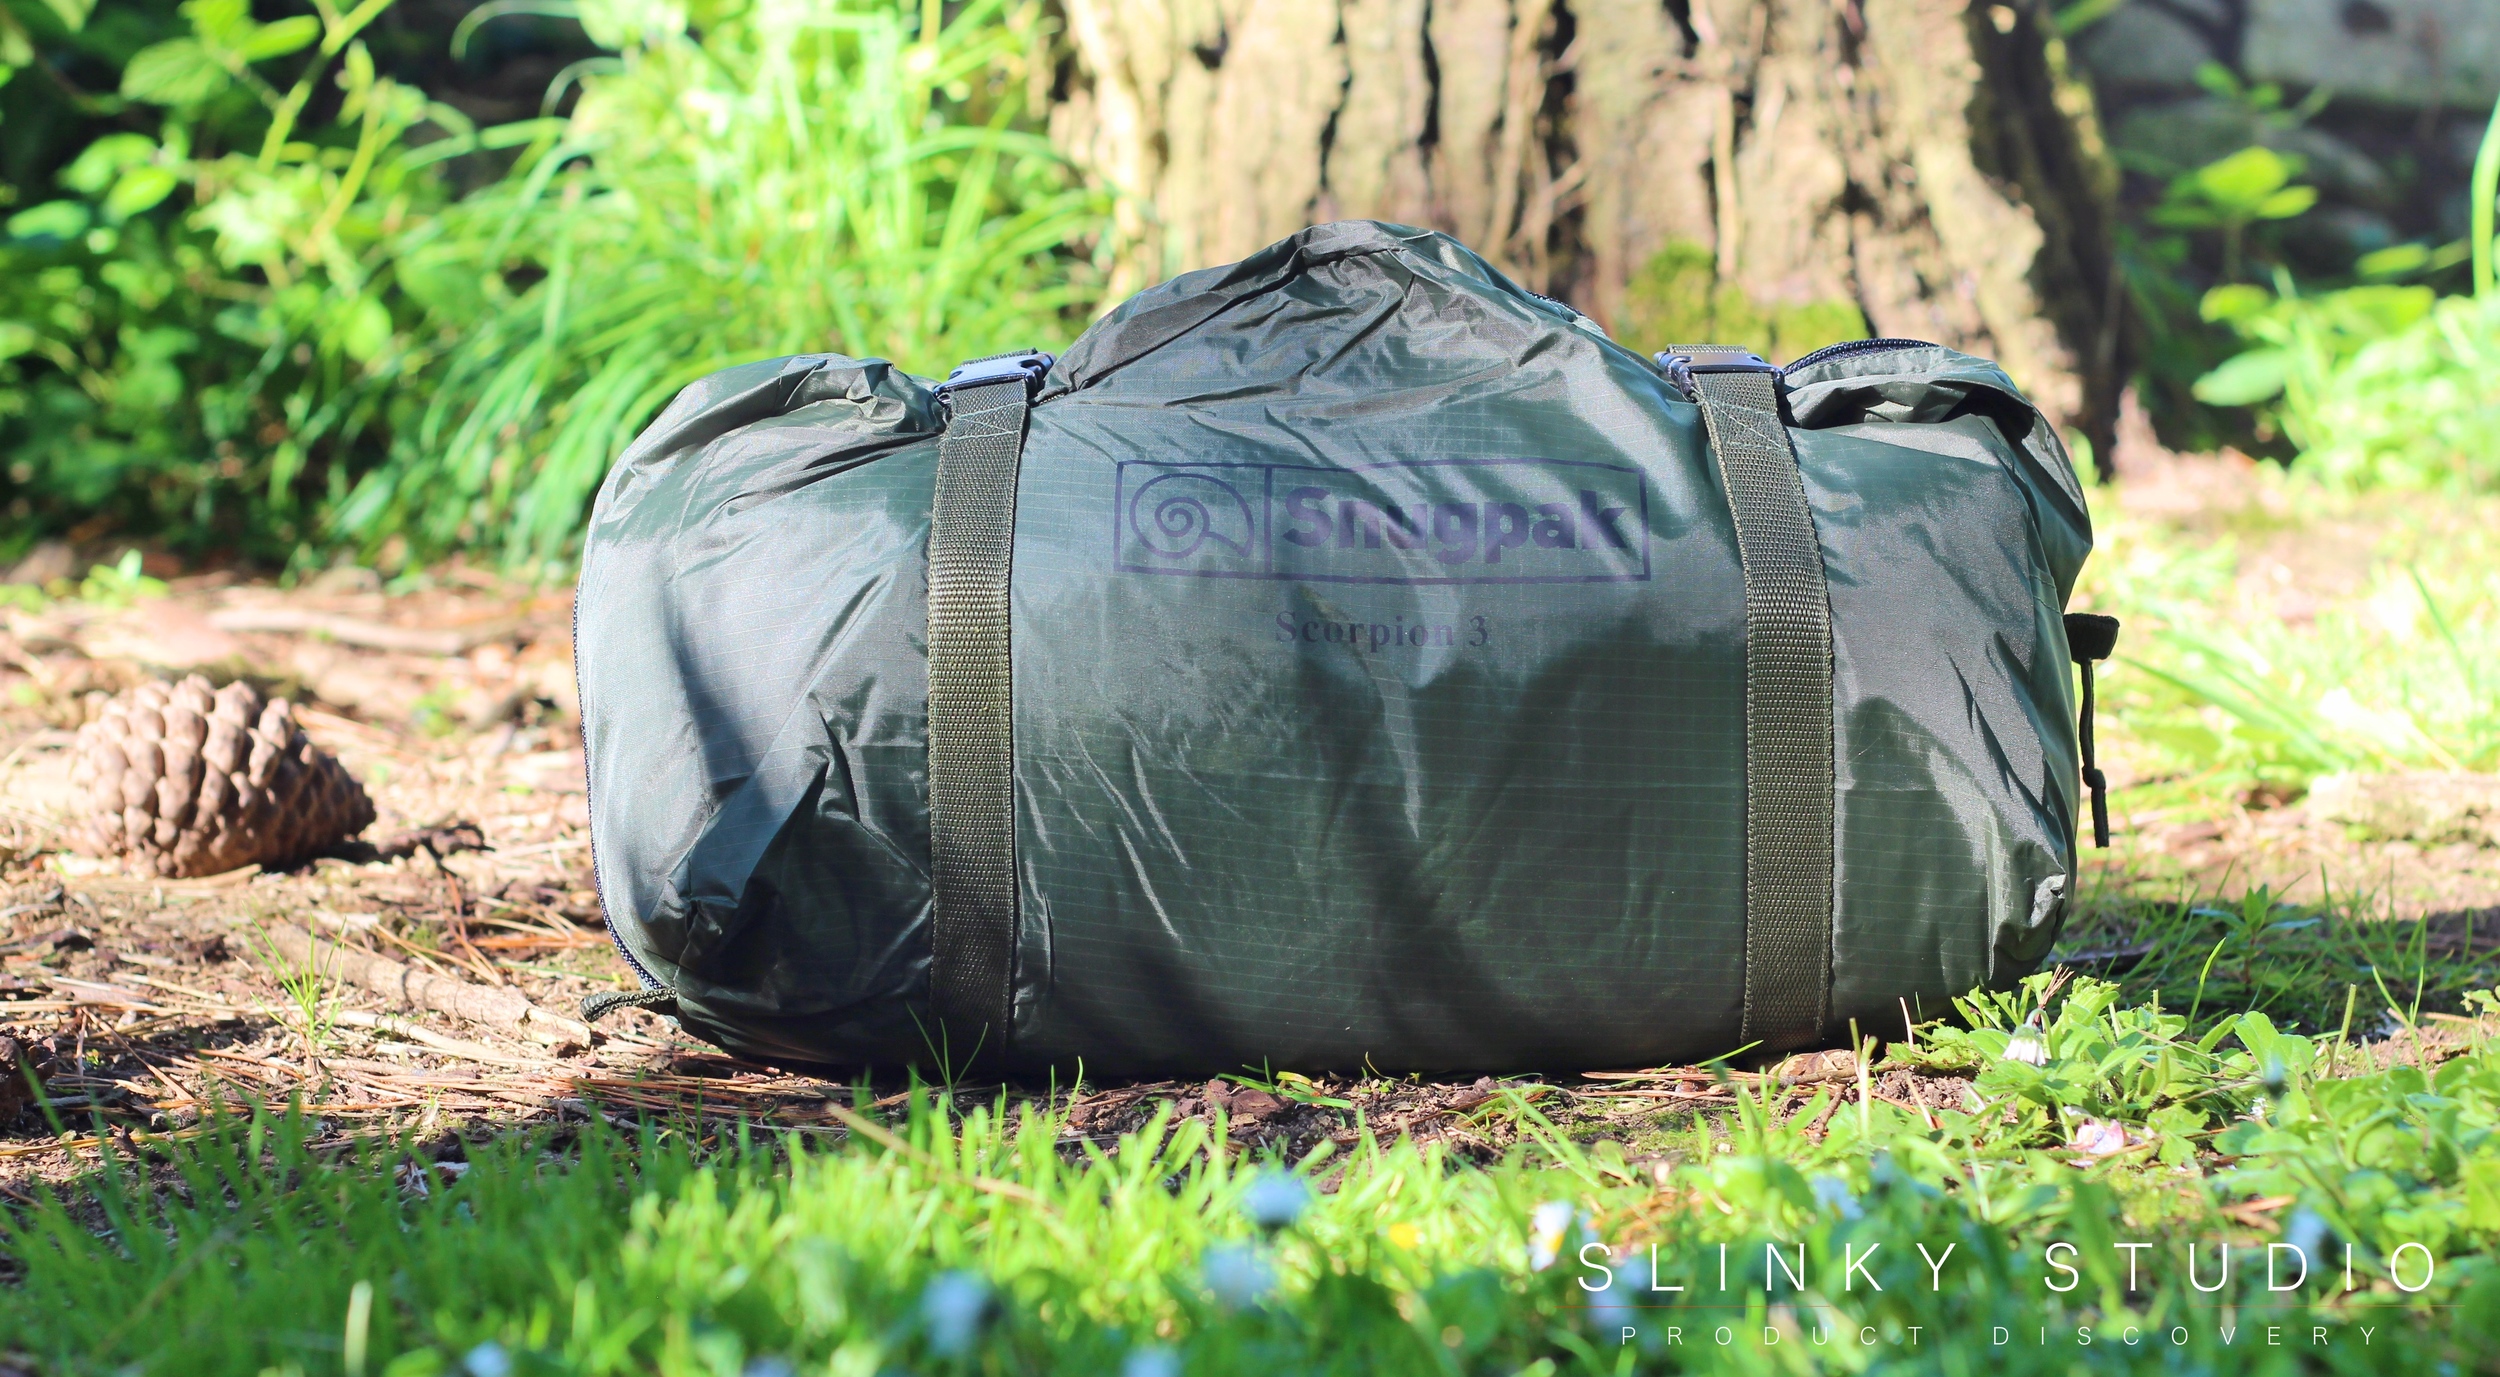 Snugpak Scorpion 3 Tent Bag.jpg